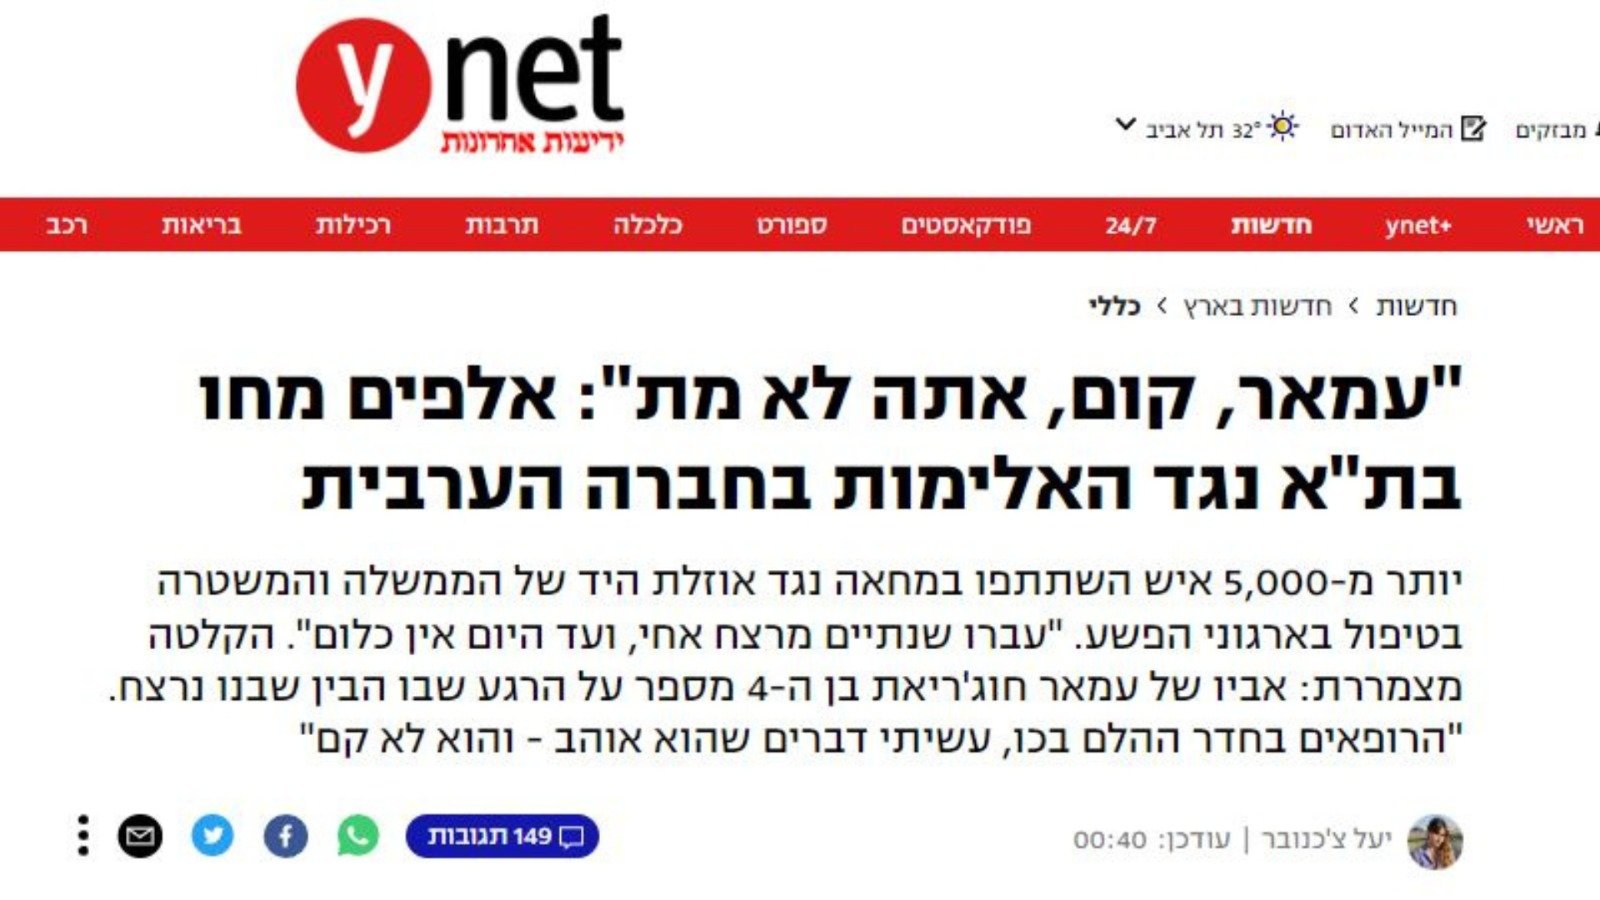 اجنبية، عبرية وعربية: تغطية اعلامية موسعة لـ "مسيرة الأموات"-7